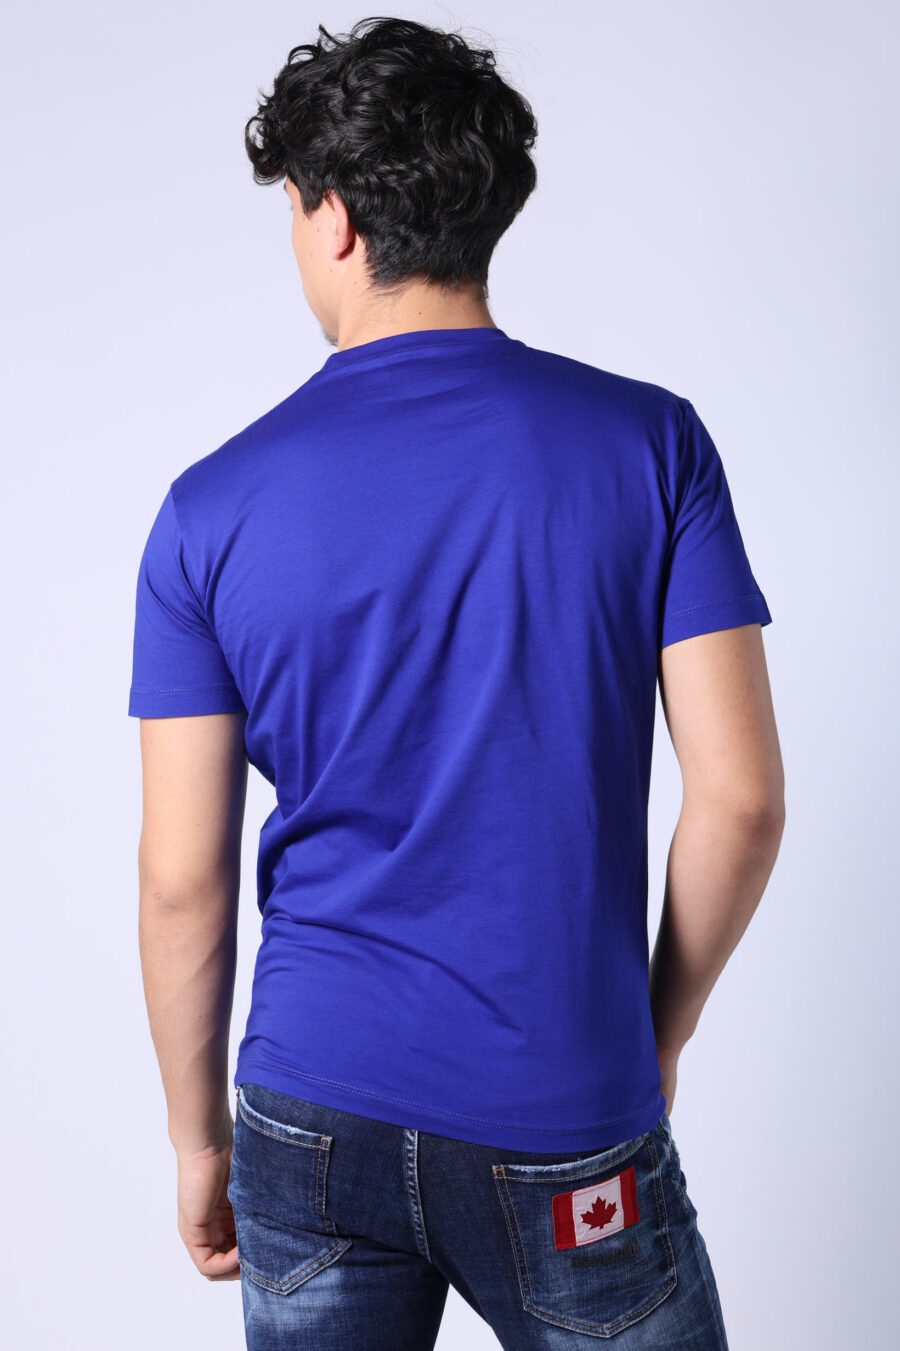 T-shirt bleu électrique avec maxilogo "icon" blanc - Untitled Catalog 05401